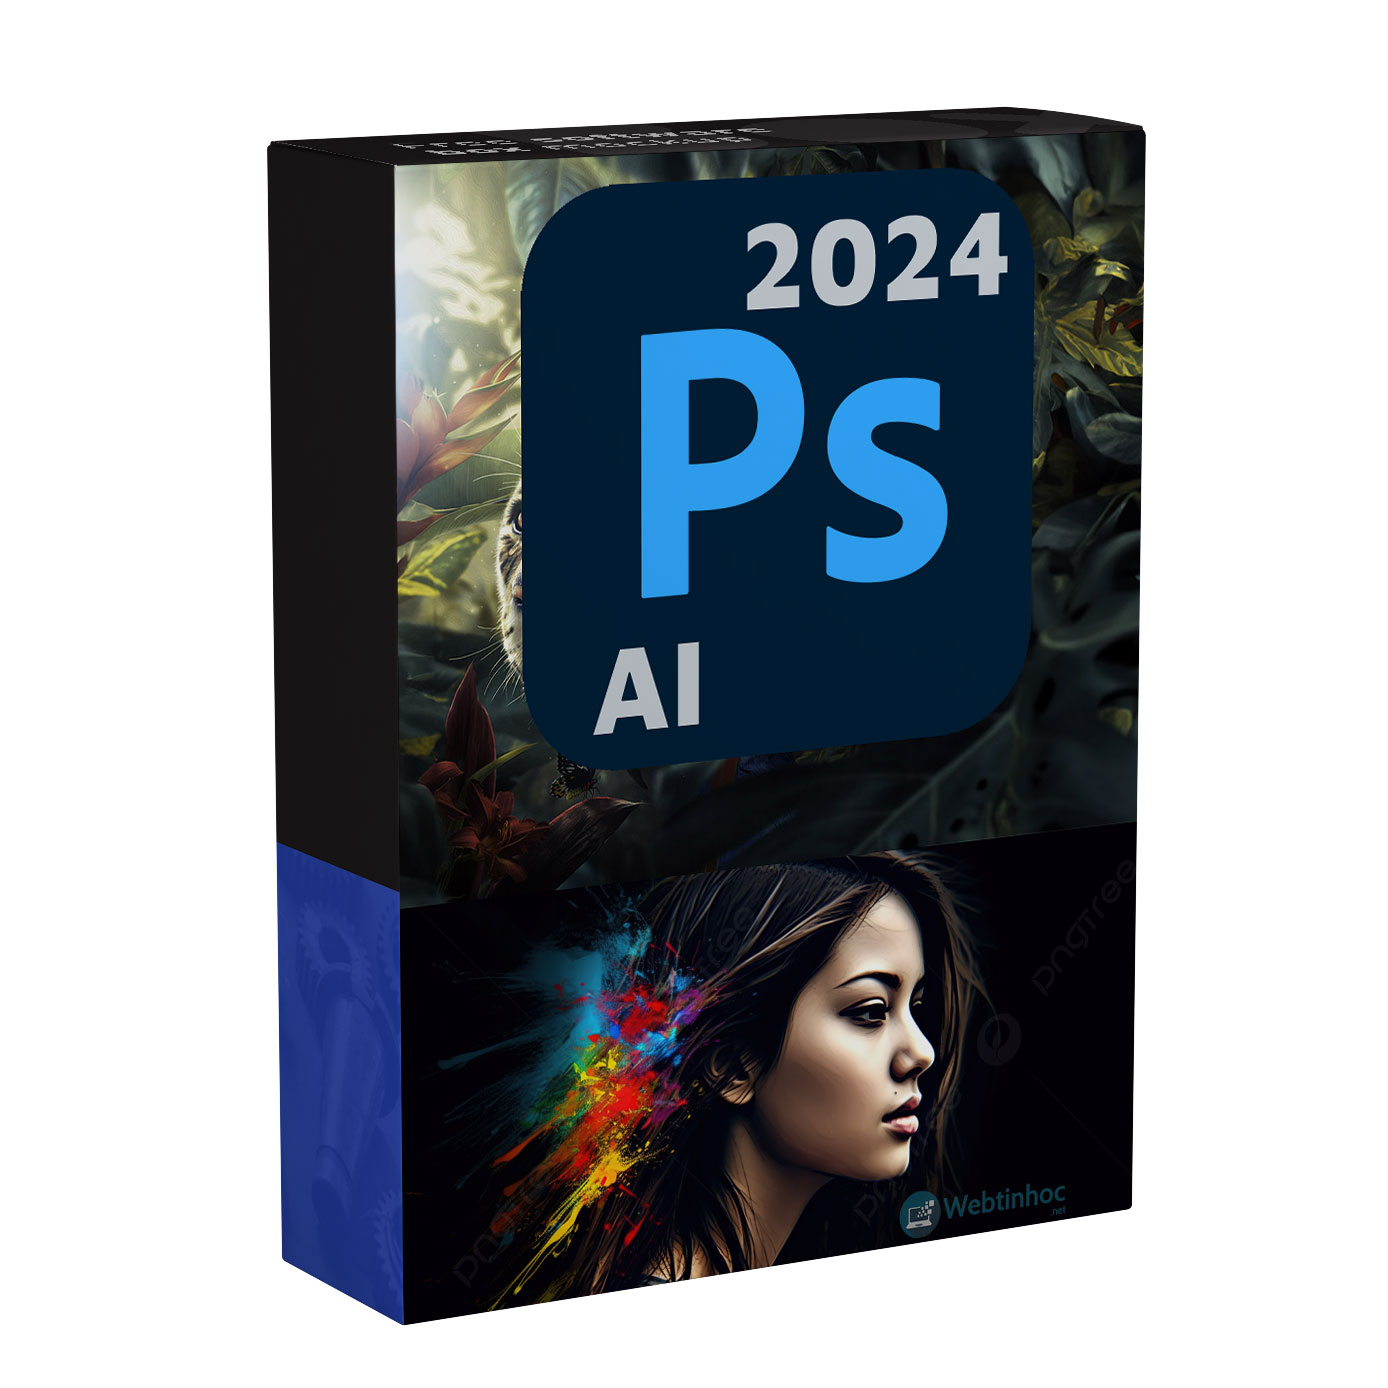 Adobe Photoshop 2024 Full + Patch kích hoạt chấp mọi bản quyền